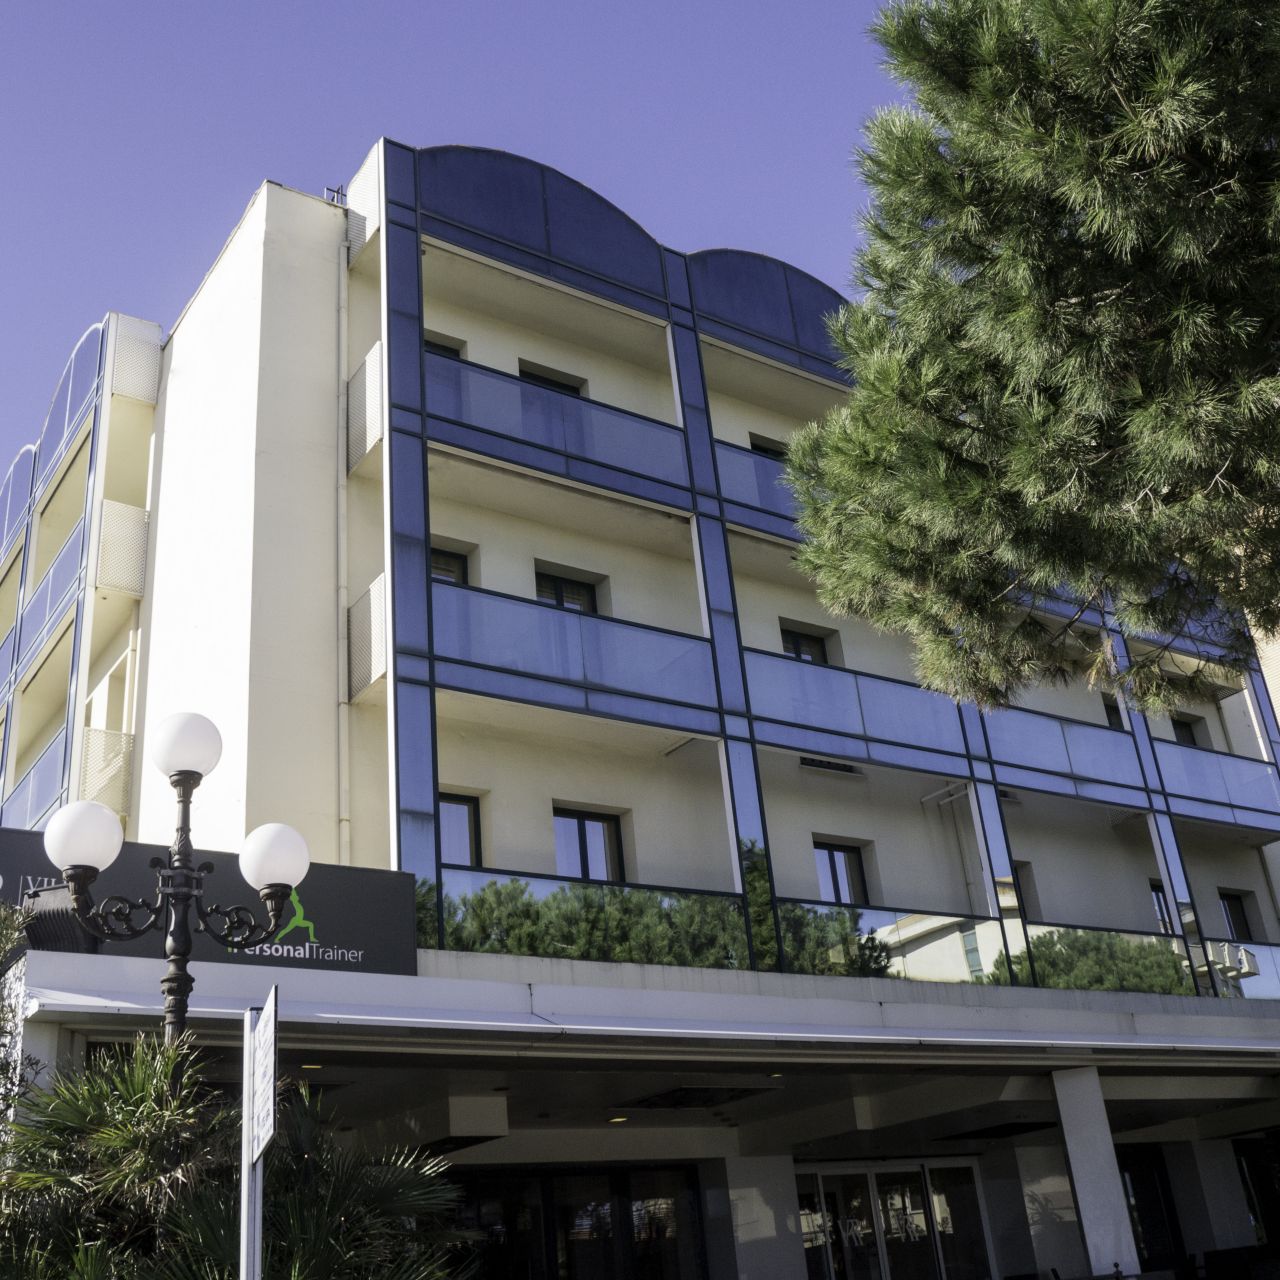 Hotel Villa Rosa Riviera - Rimini - HOTEL INFO